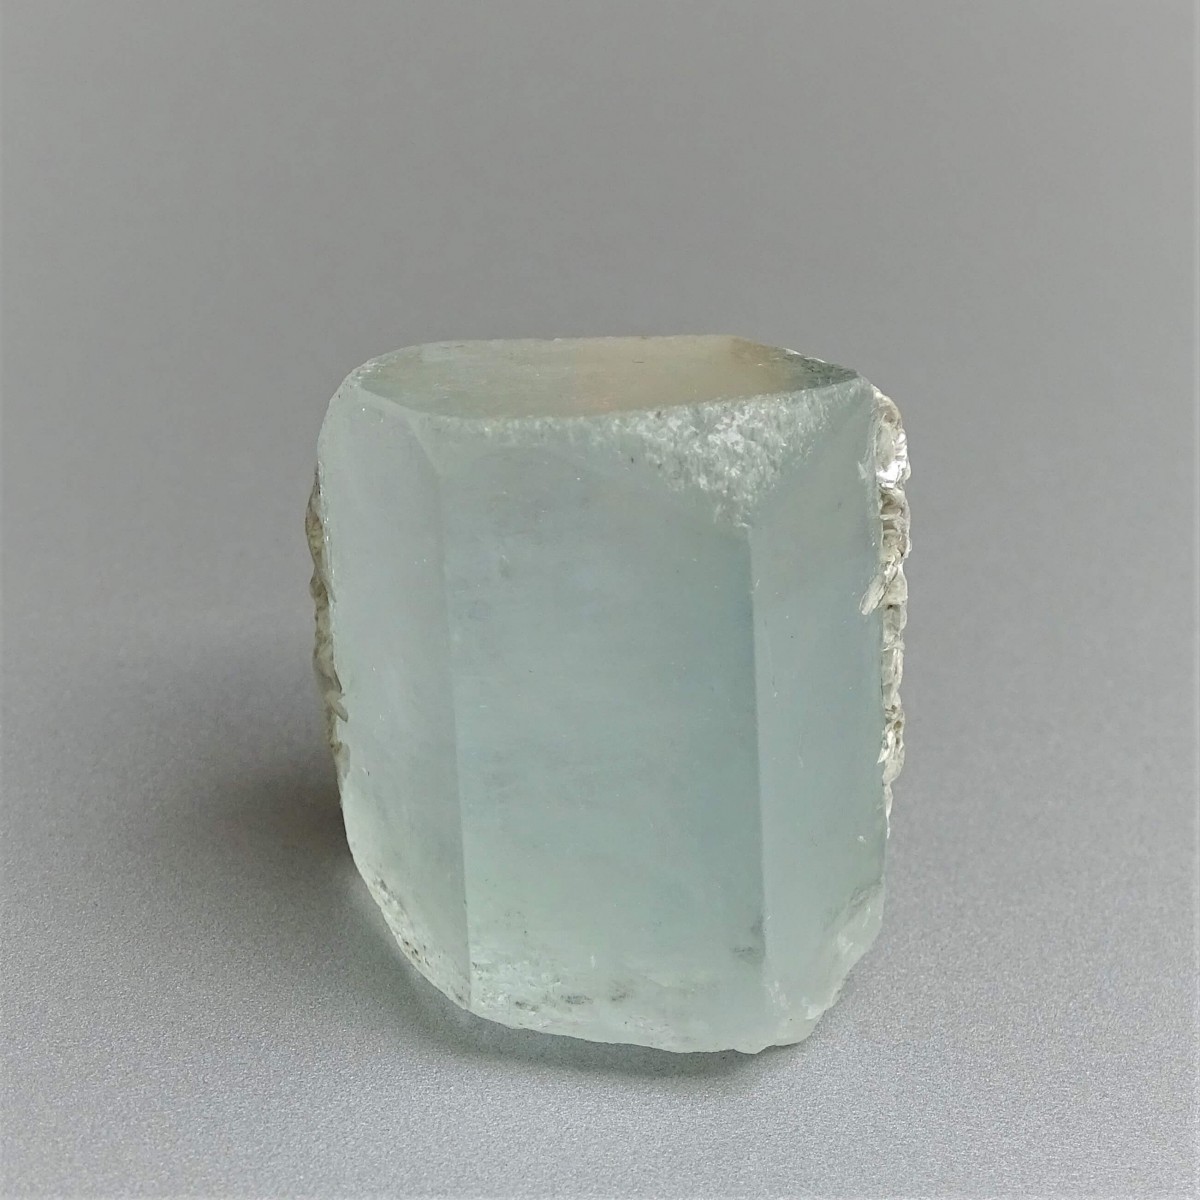 Aquamarin natürlicher Kristall 44,7g, Pakistan